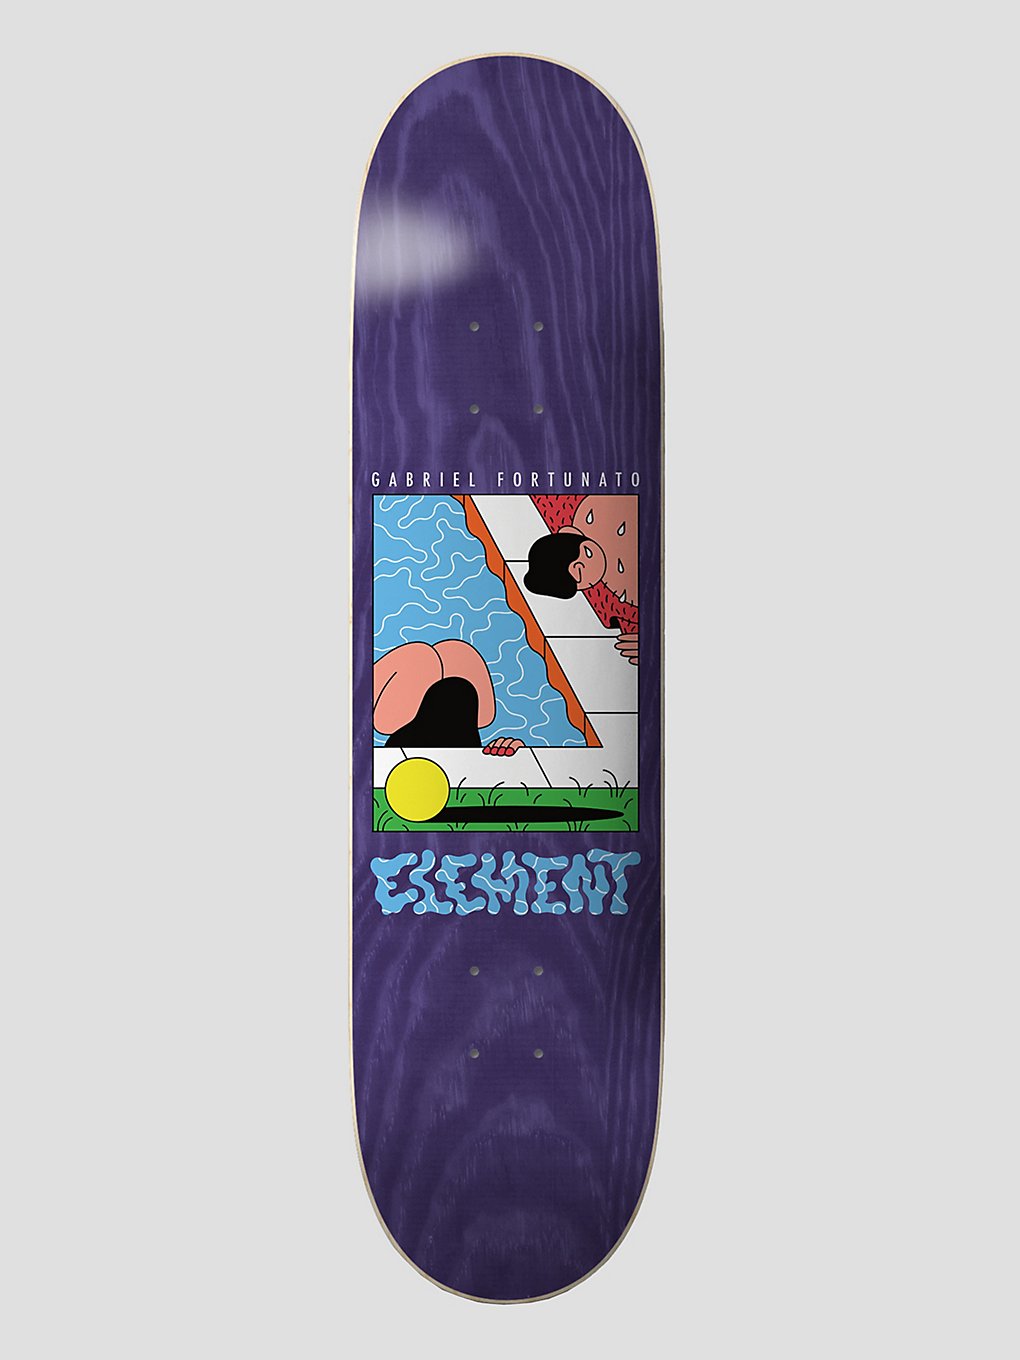 Element Landrein Gabriel Fortunato 8.25" Skateboard deck patroon